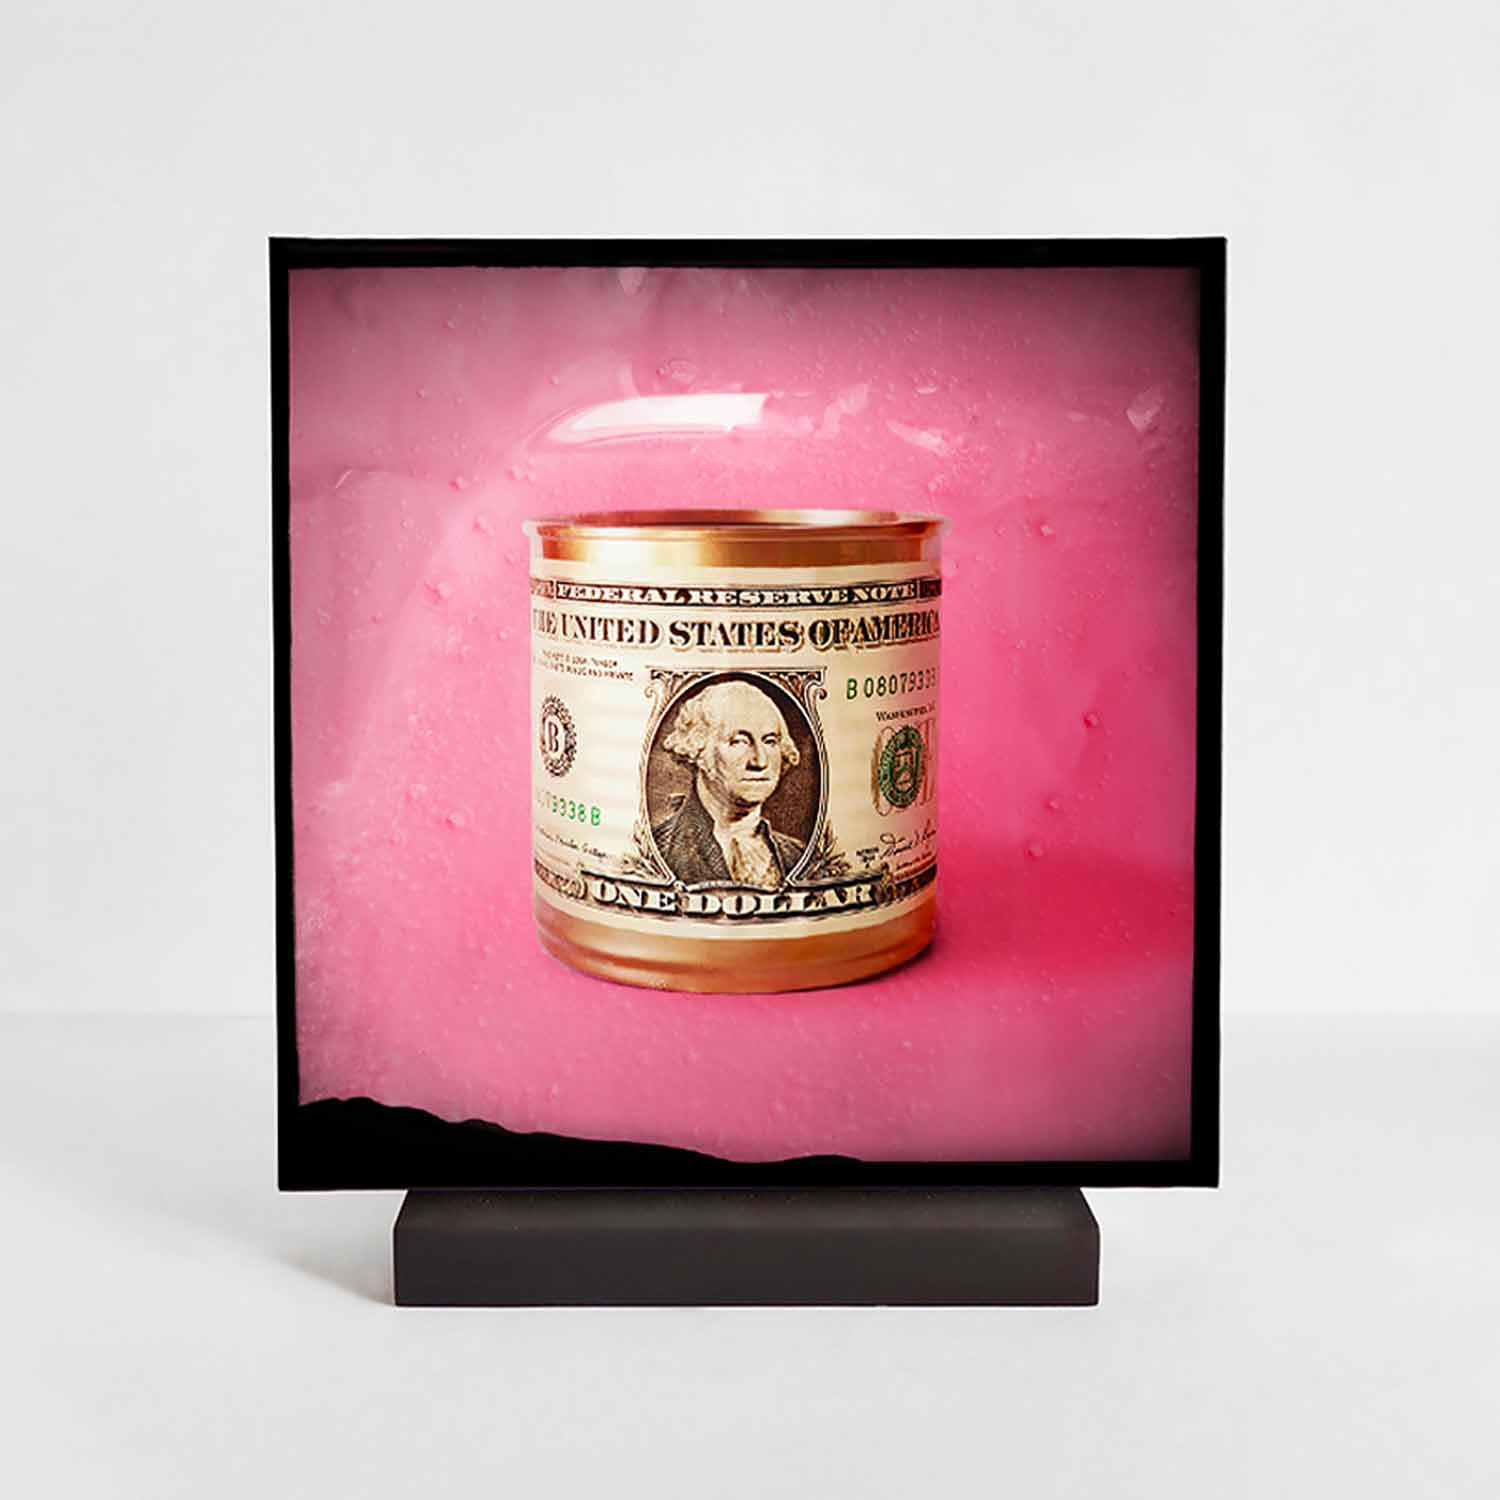 Galith Sultan, Golden Tin/Pink, photo - Galerie de vente et d’achat d’art contemporain en ligne Artalistic